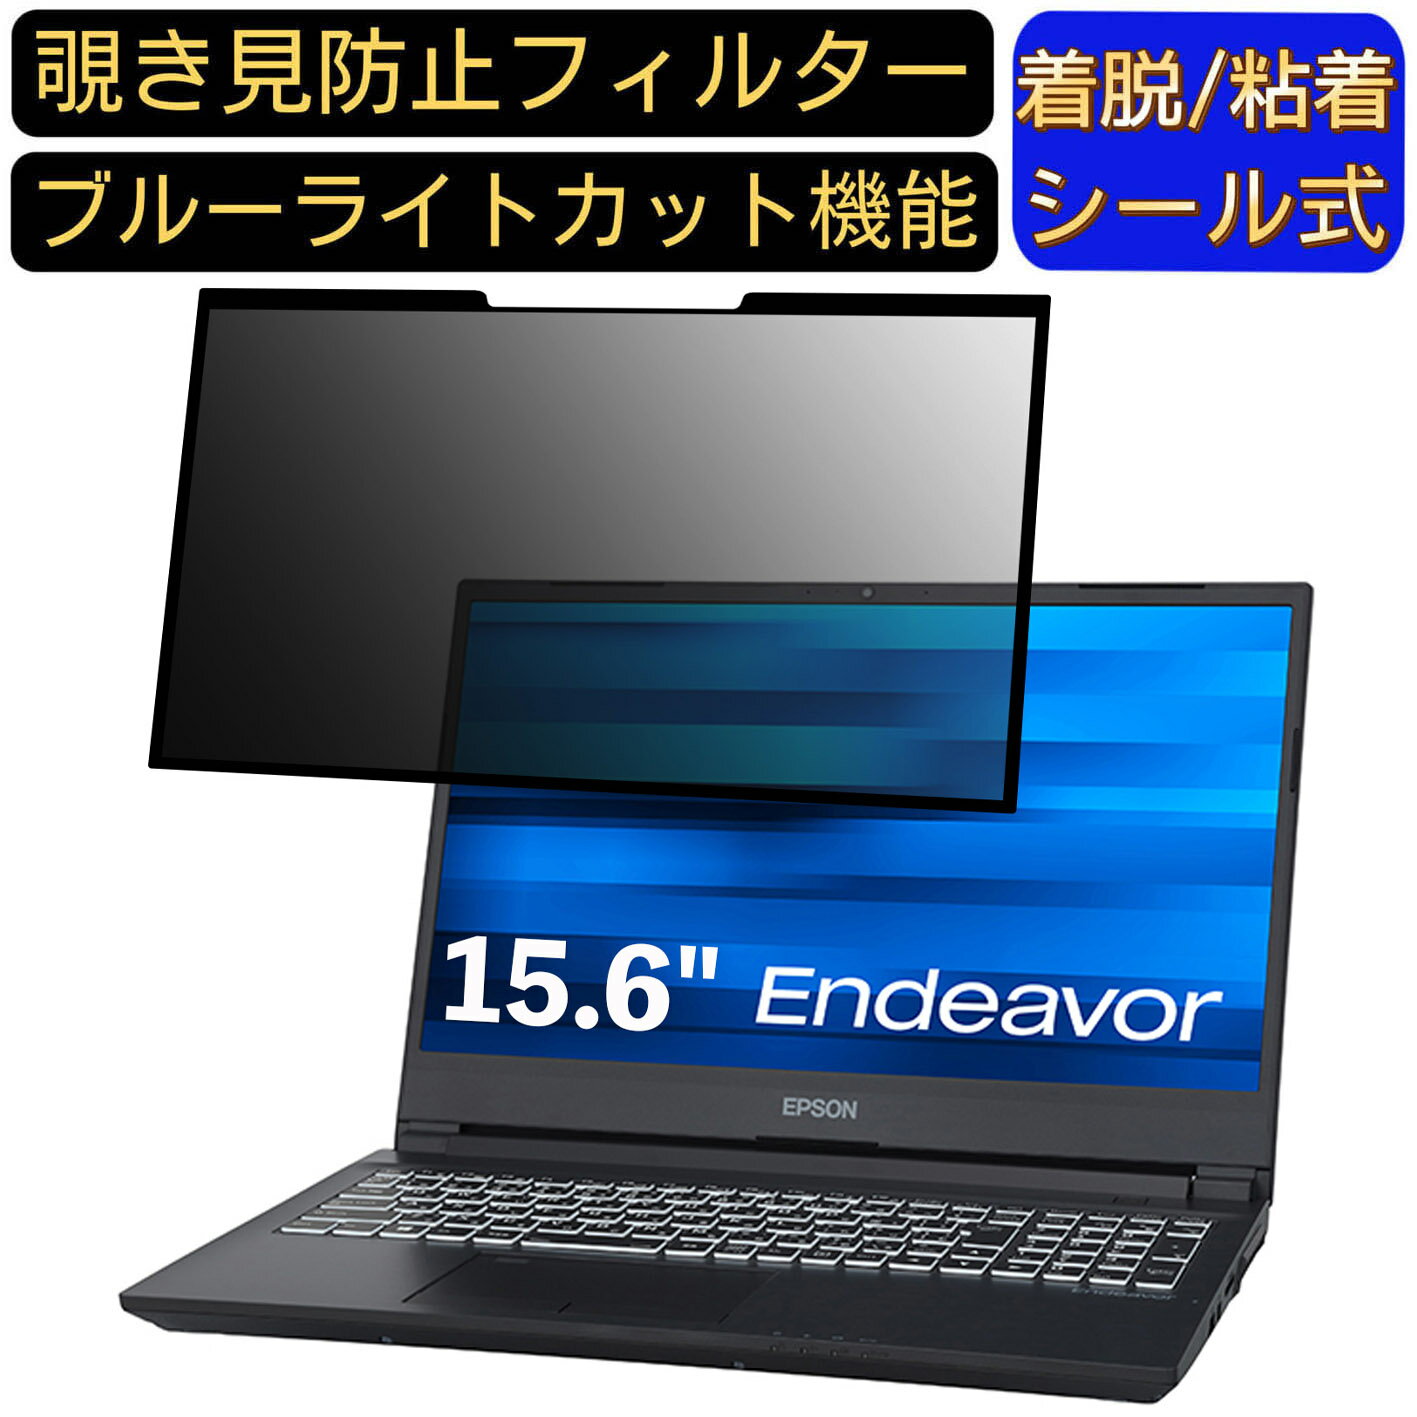 【ポイント2倍】EPSON Endeavor NJ7500E 15.